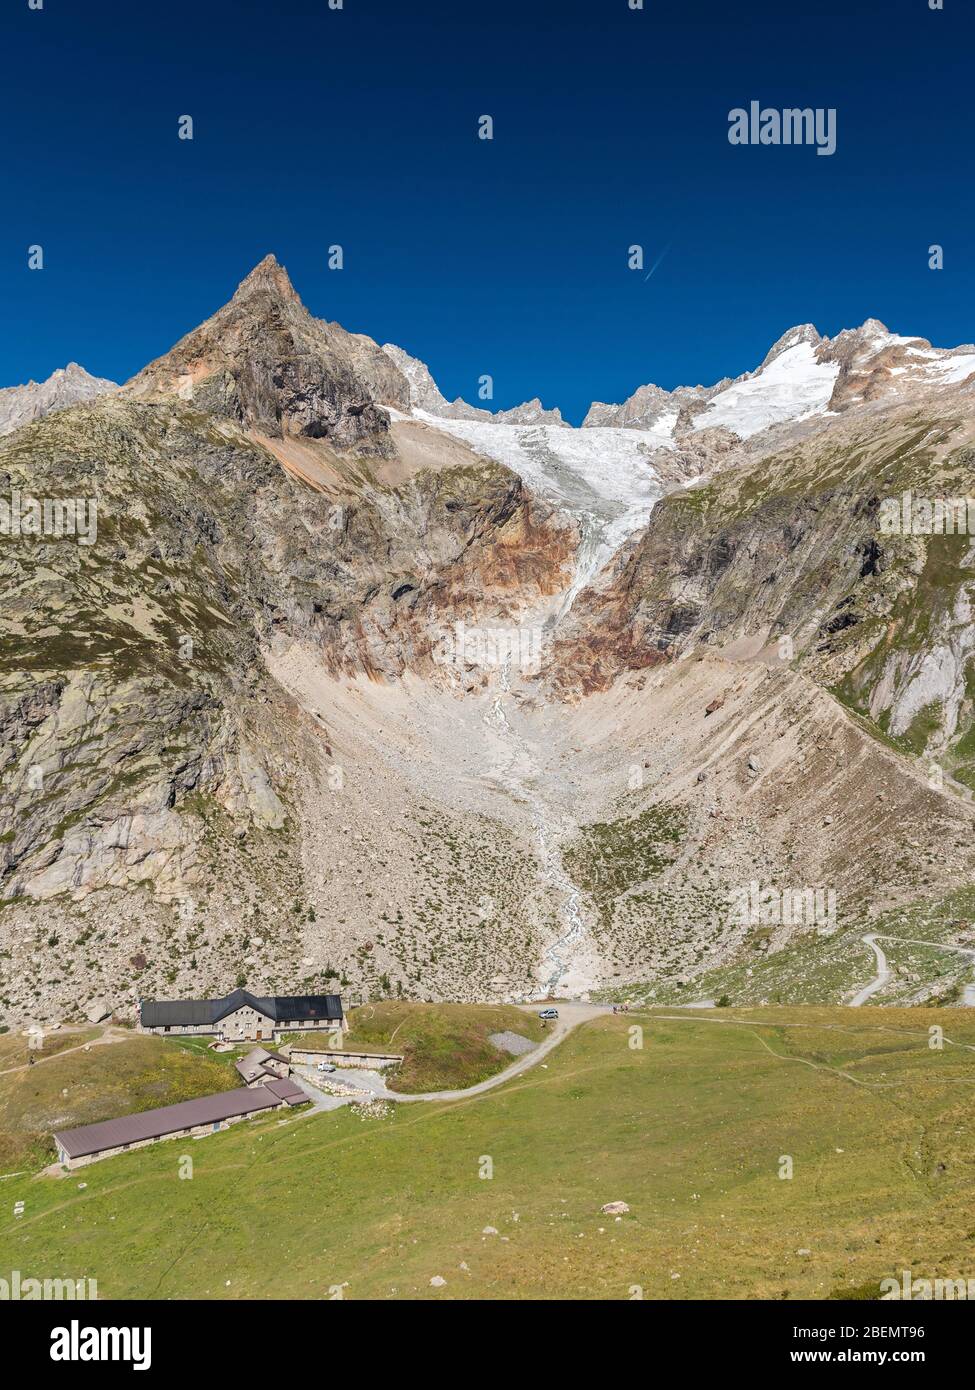 Le refuge Elena dans le val Ferret, le glacier du Pré de Bar et le mont Dolent en arrière-plan (vallée d'Aoste, Italie) Banque D'Images